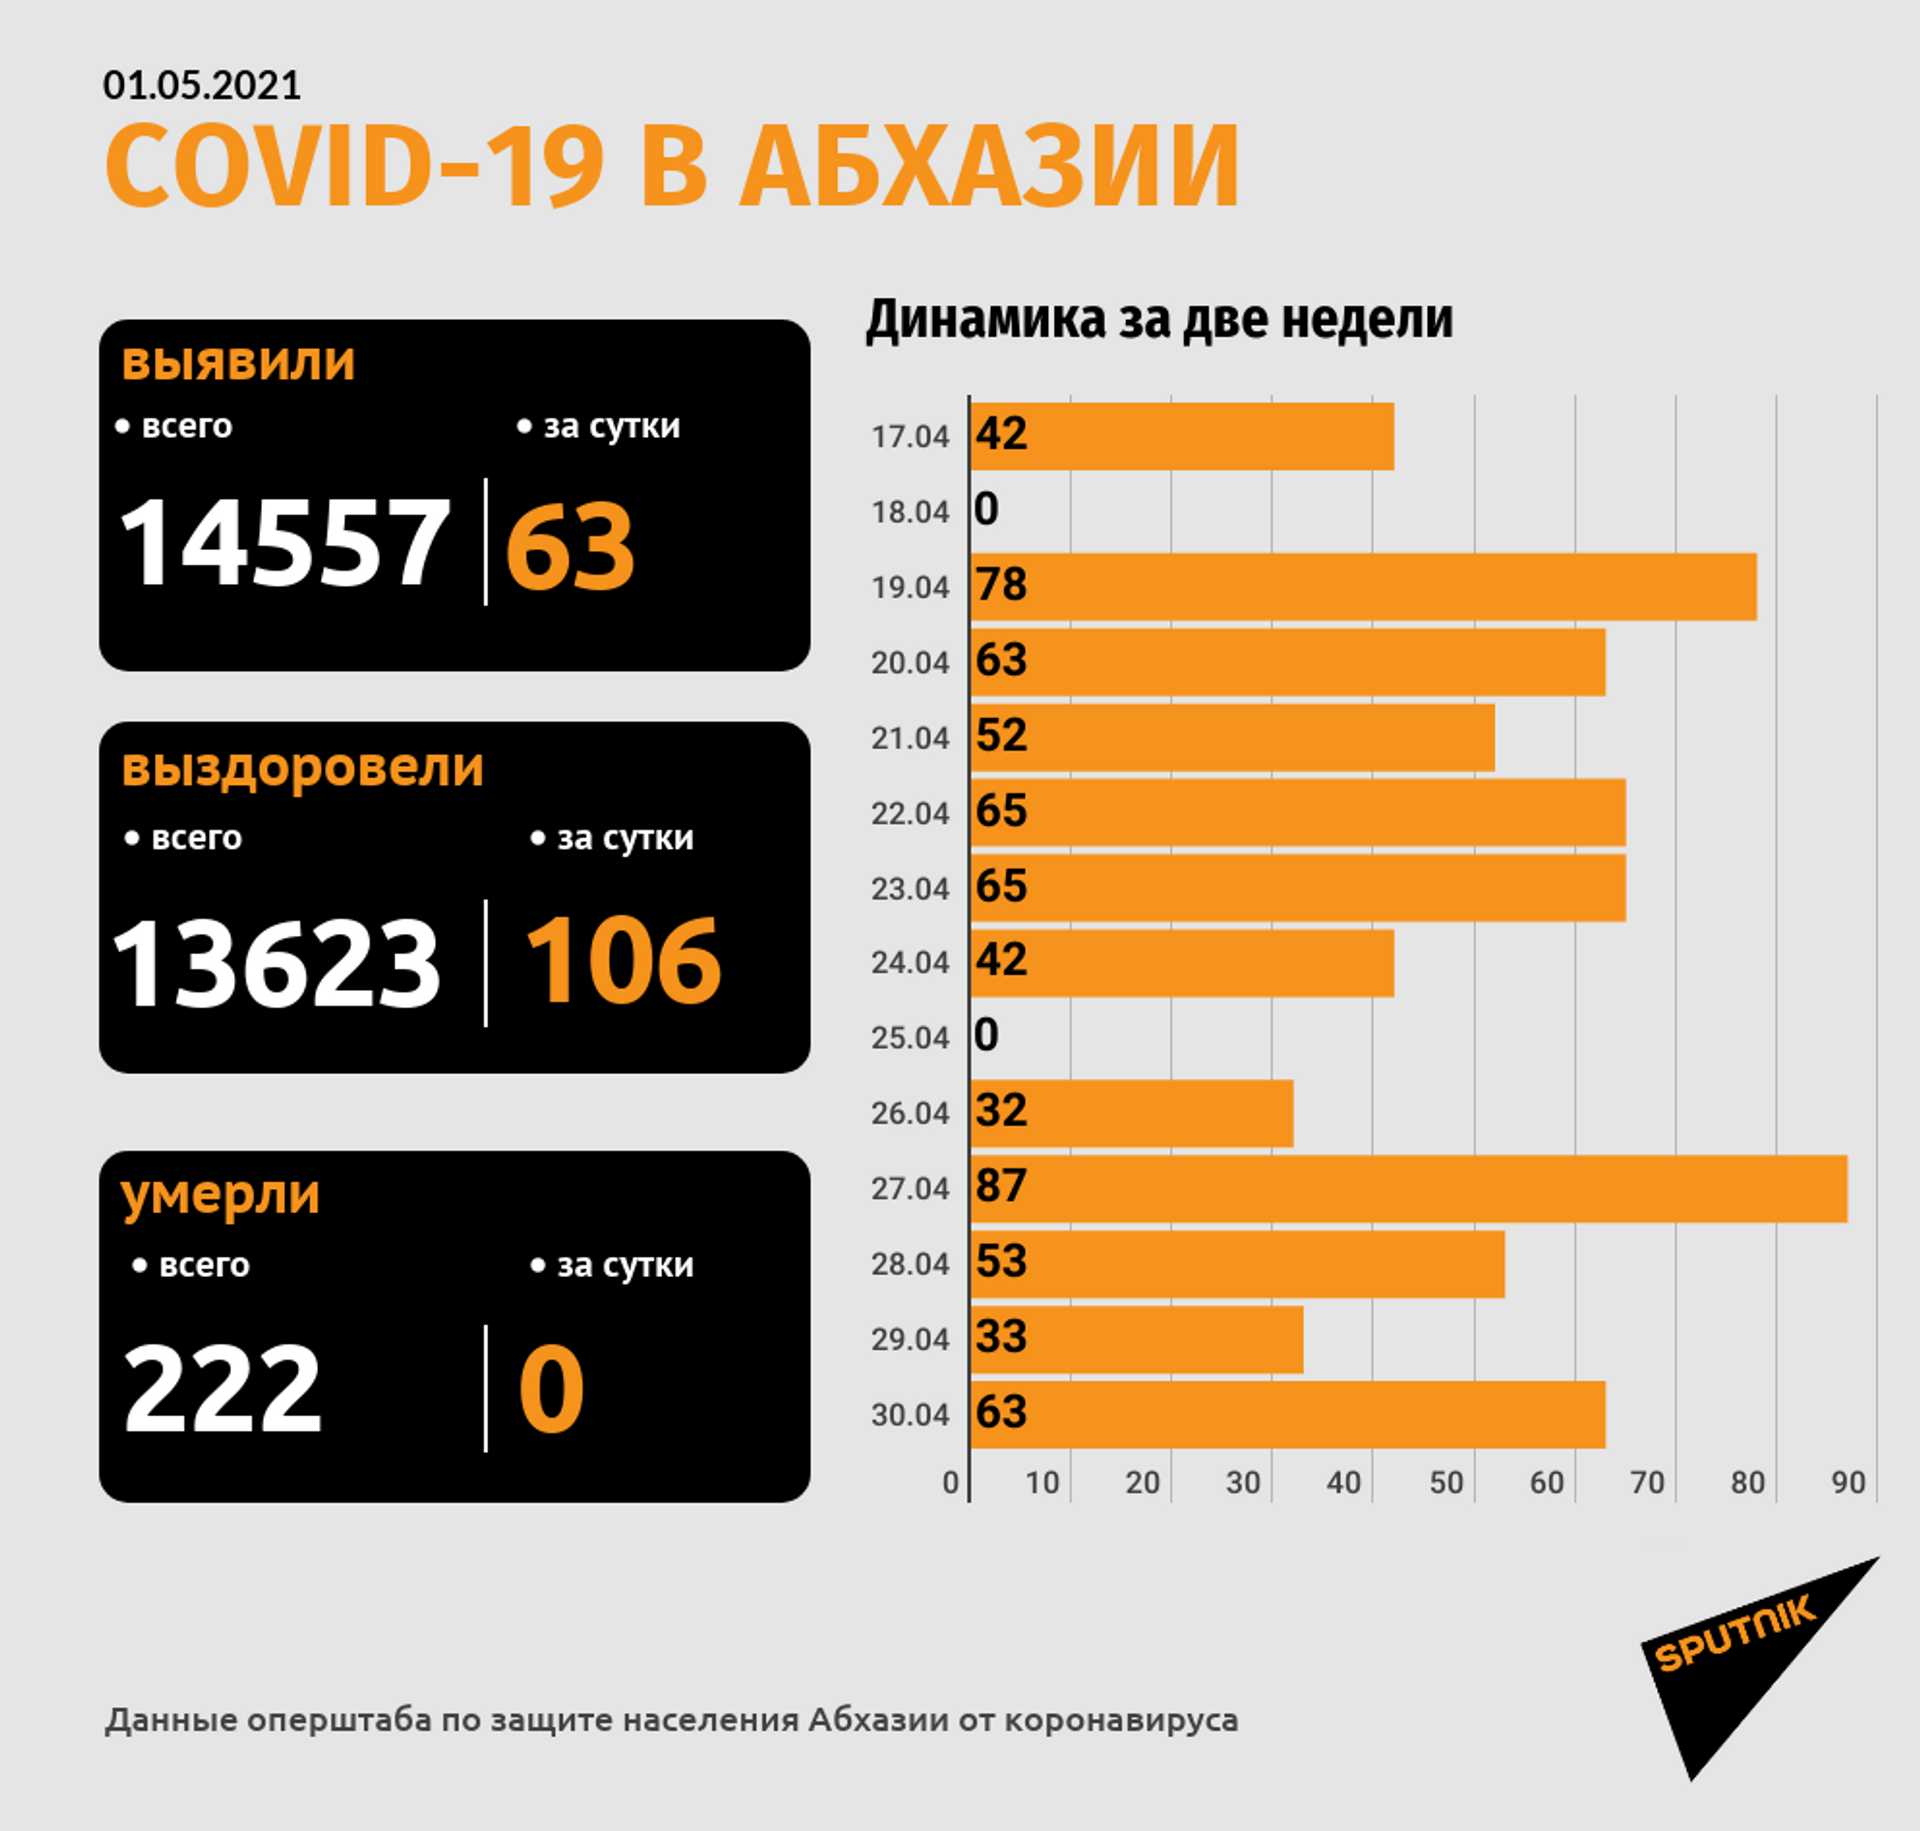 Диагноз COVID-19 подтвержден у 63 человек за сутки в Абхазии - Sputnik Абхазия, 1920, 01.05.2021